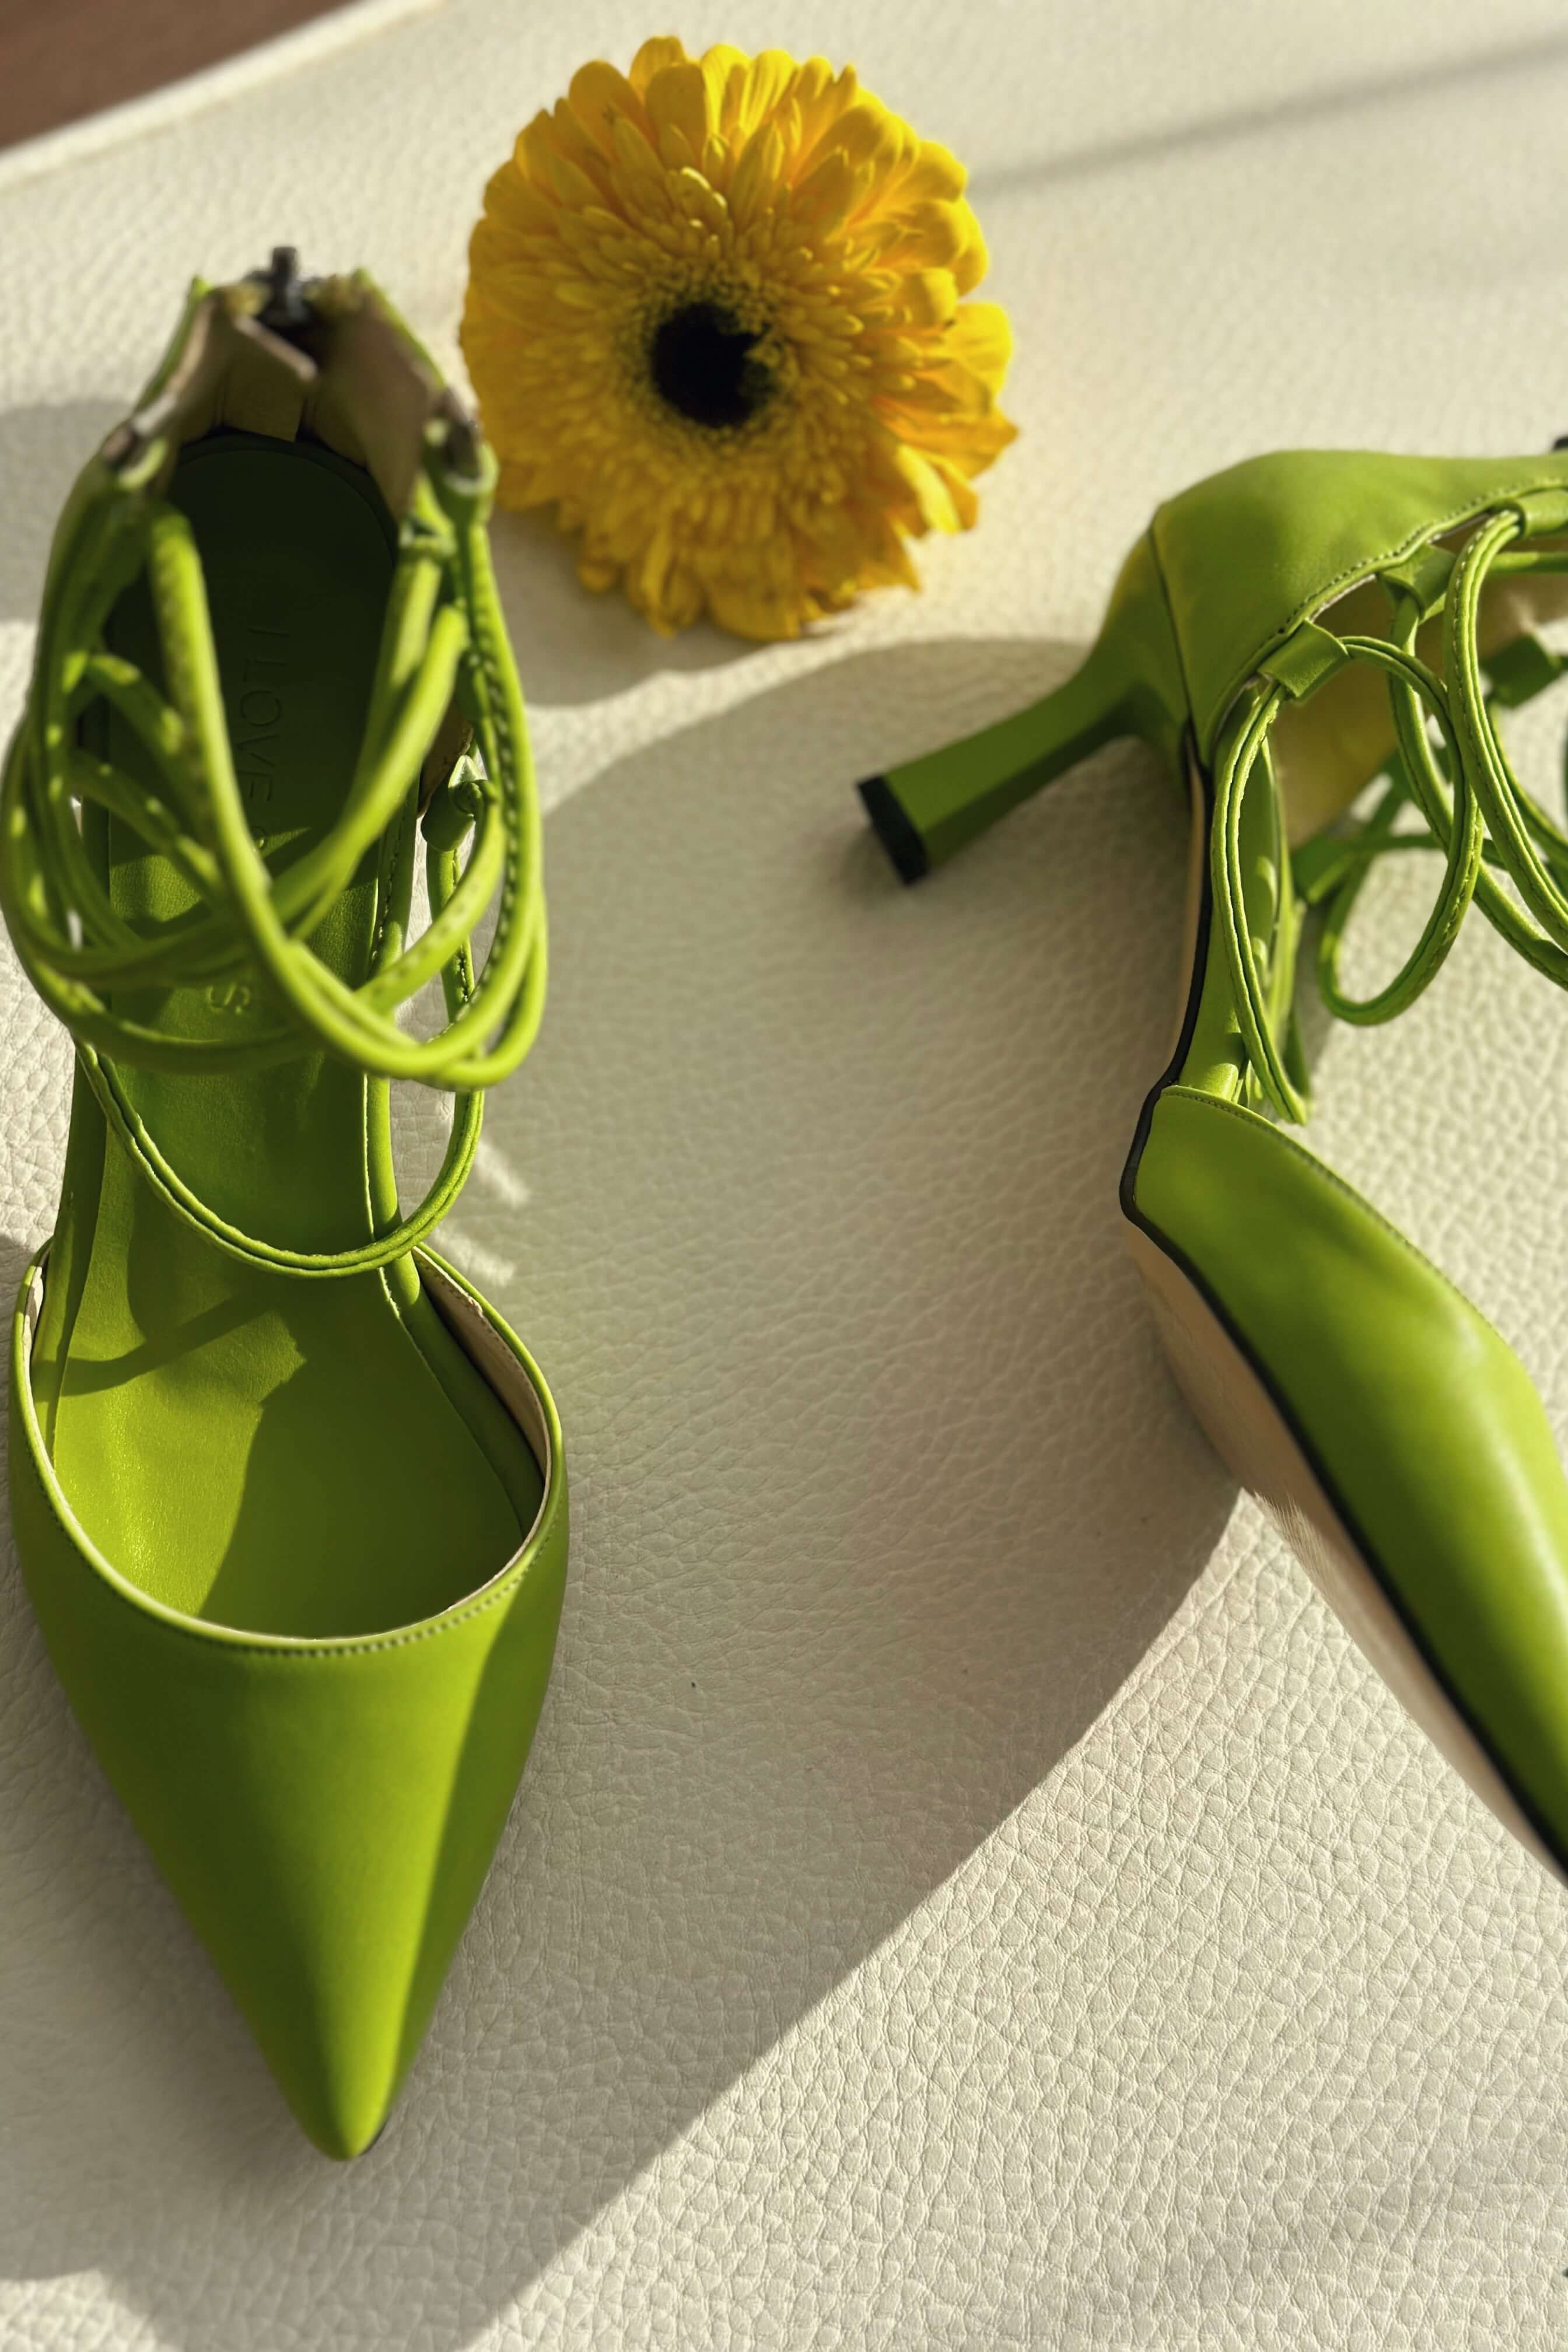 Milena Mat Deri Kısa Topuklu Kadın Stiletto Yeşil